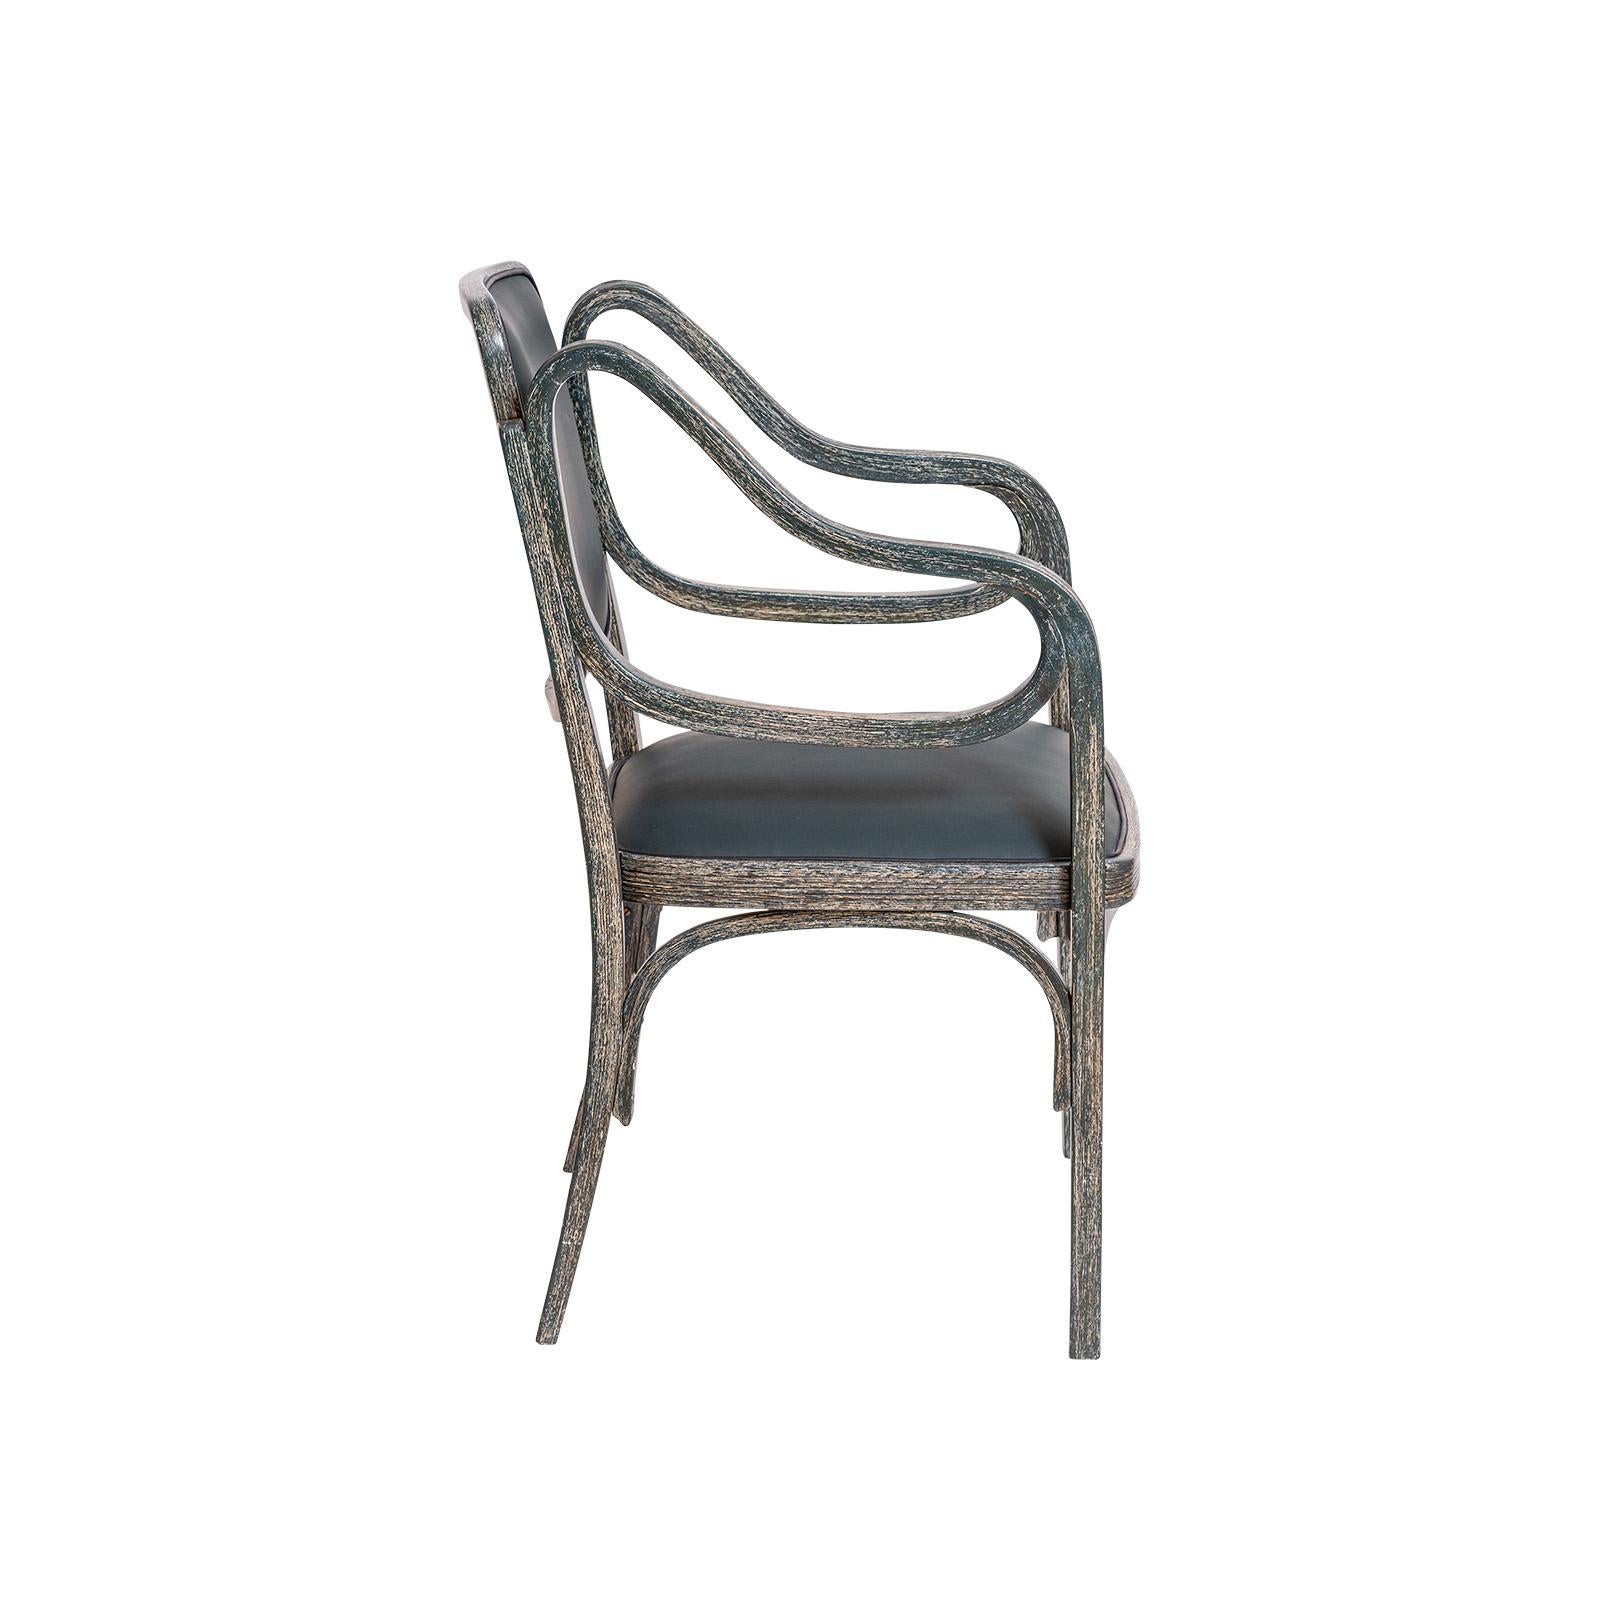 Pionnier et maître de la modernité, Otto Wagner s'est emparé de la technique, alors relativement nouvelle, du cintrage du bois pour concevoir ses meubles.
Le design de ce fauteuil date de 1901. Cette chaise particulière a été fabriquée chez Mundus